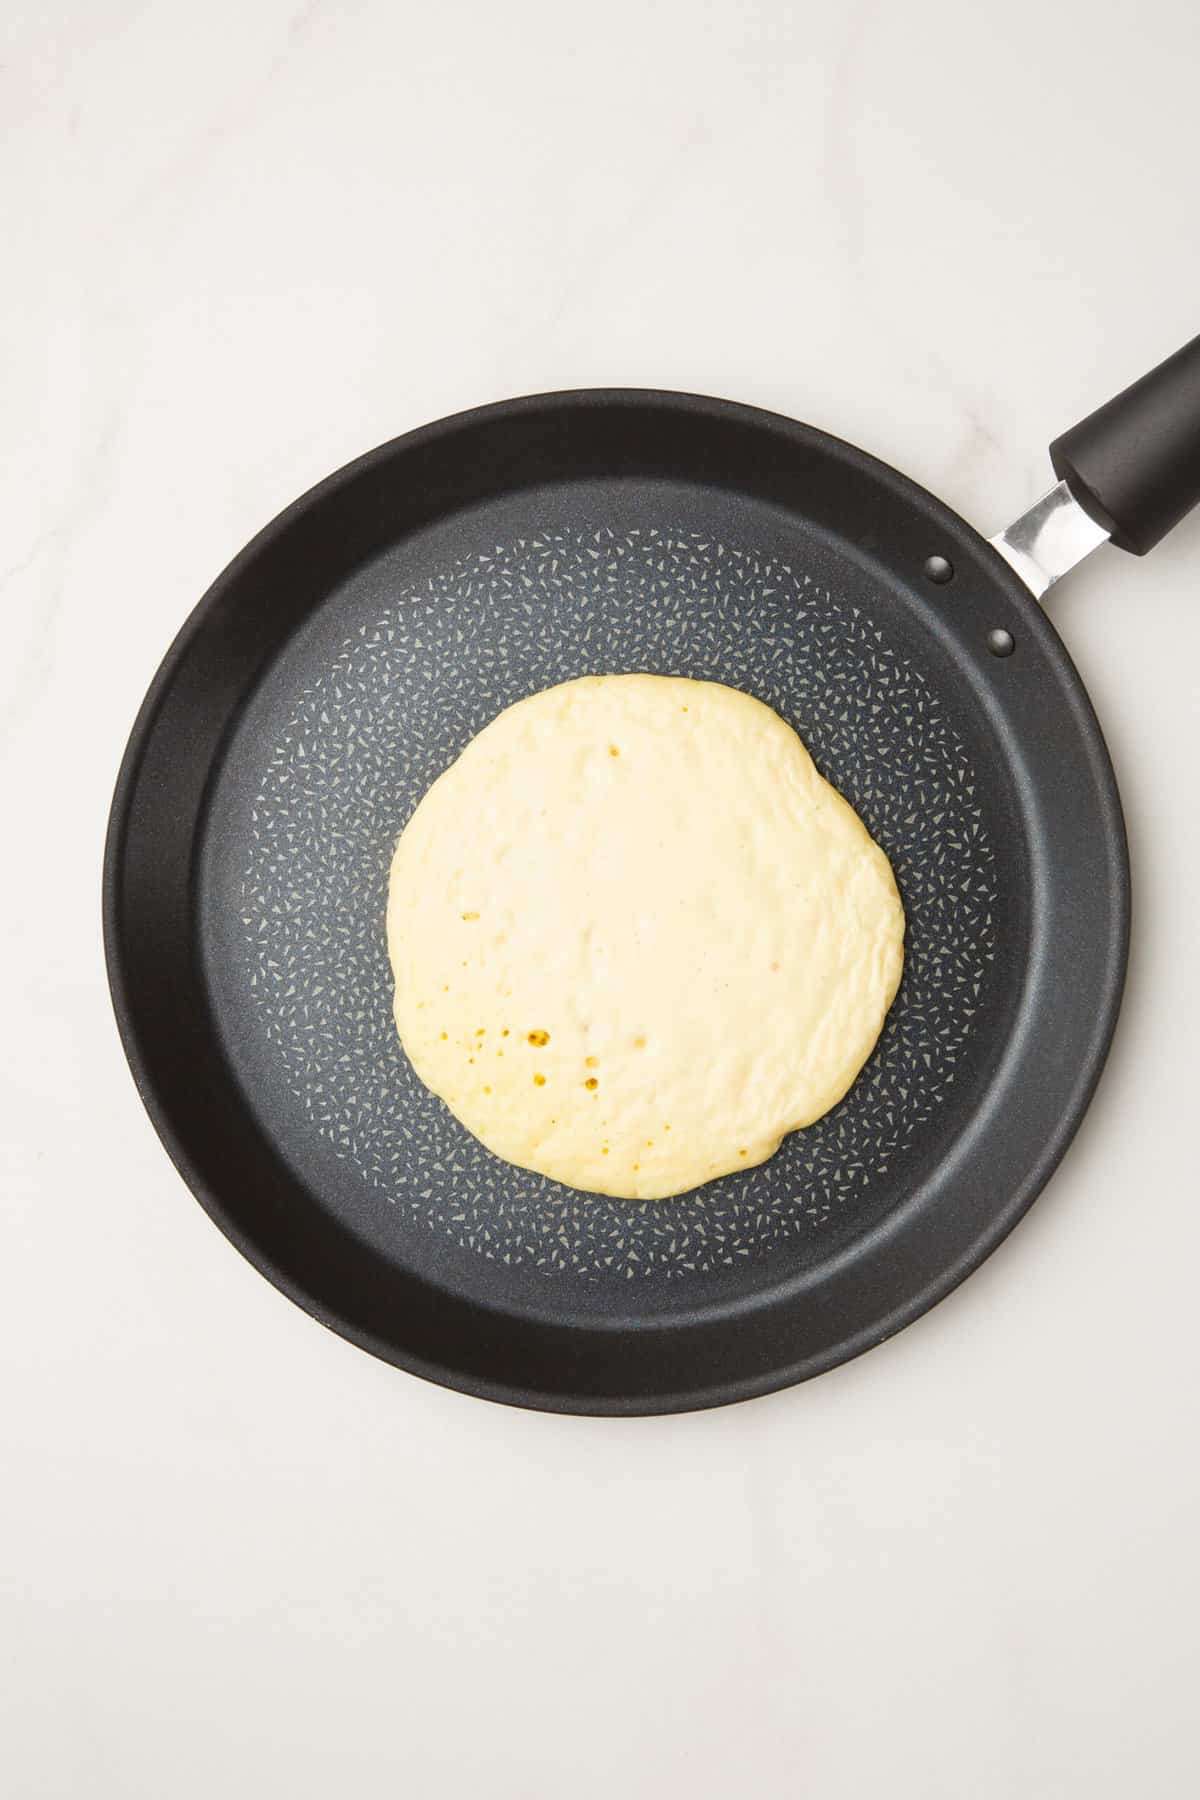 pancake ladled onto a pan